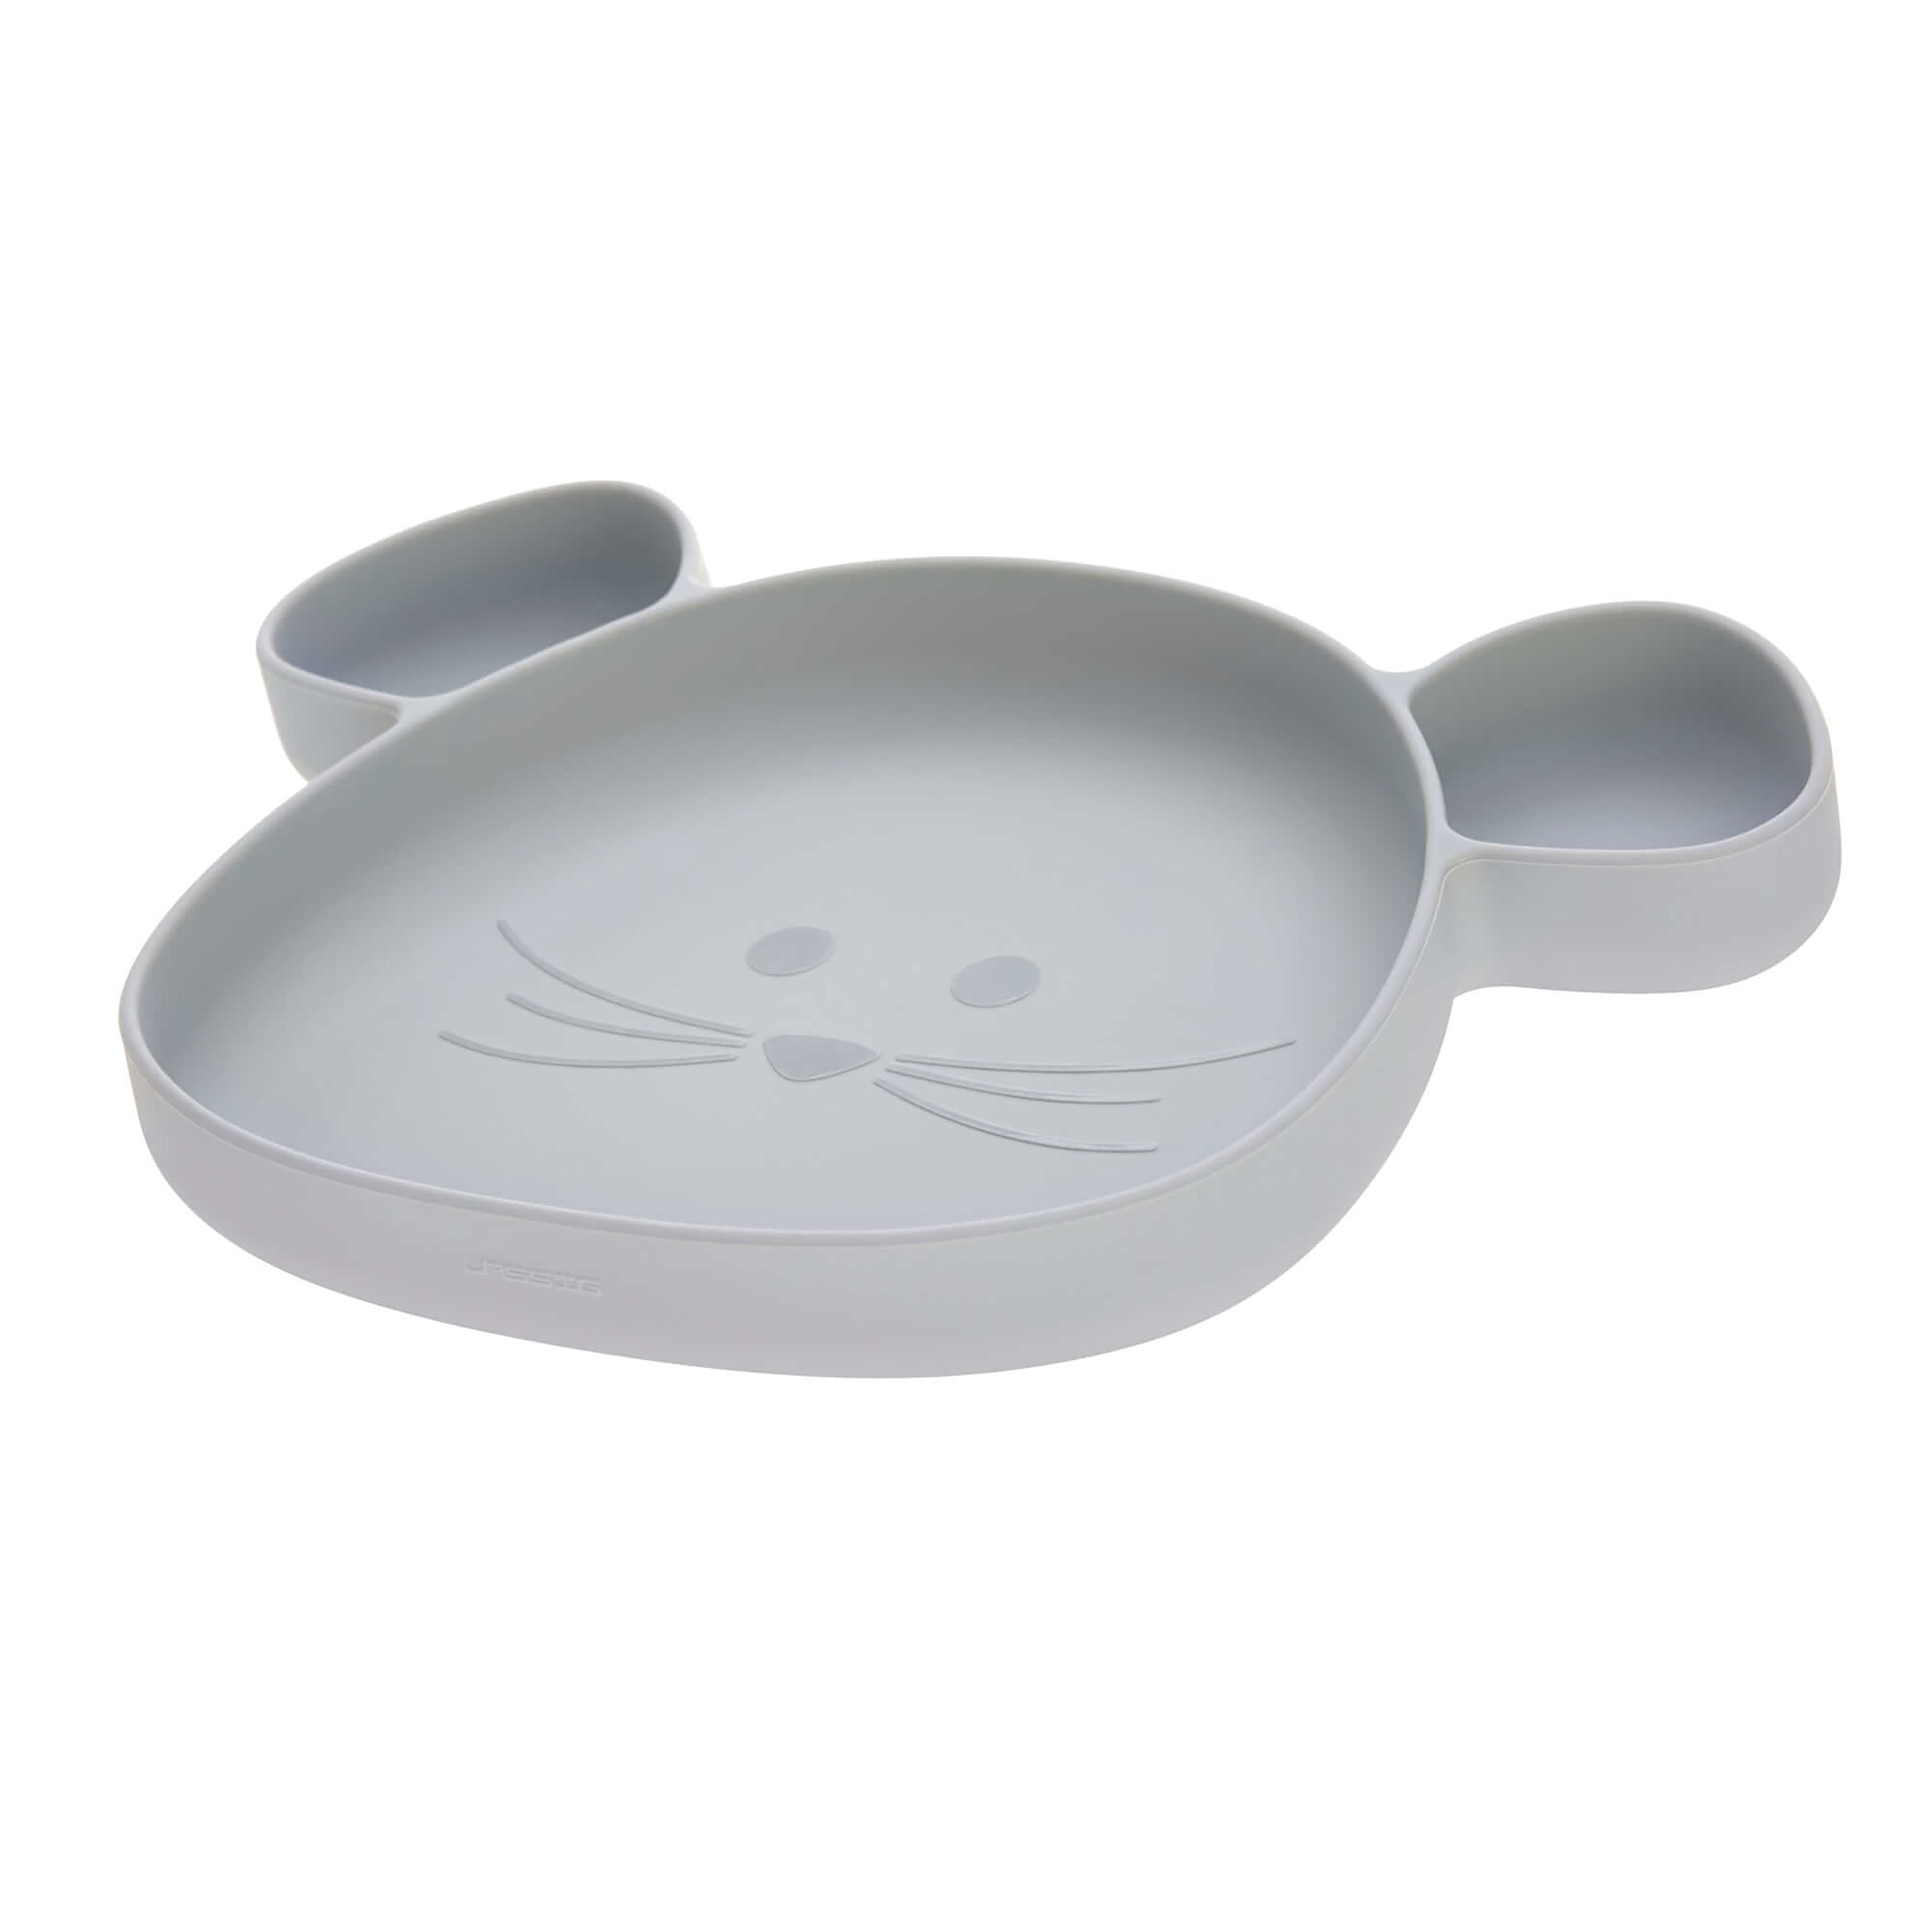 Lässig Silikon-Teller Little Chums - Mouse mit Saugnapf in grau